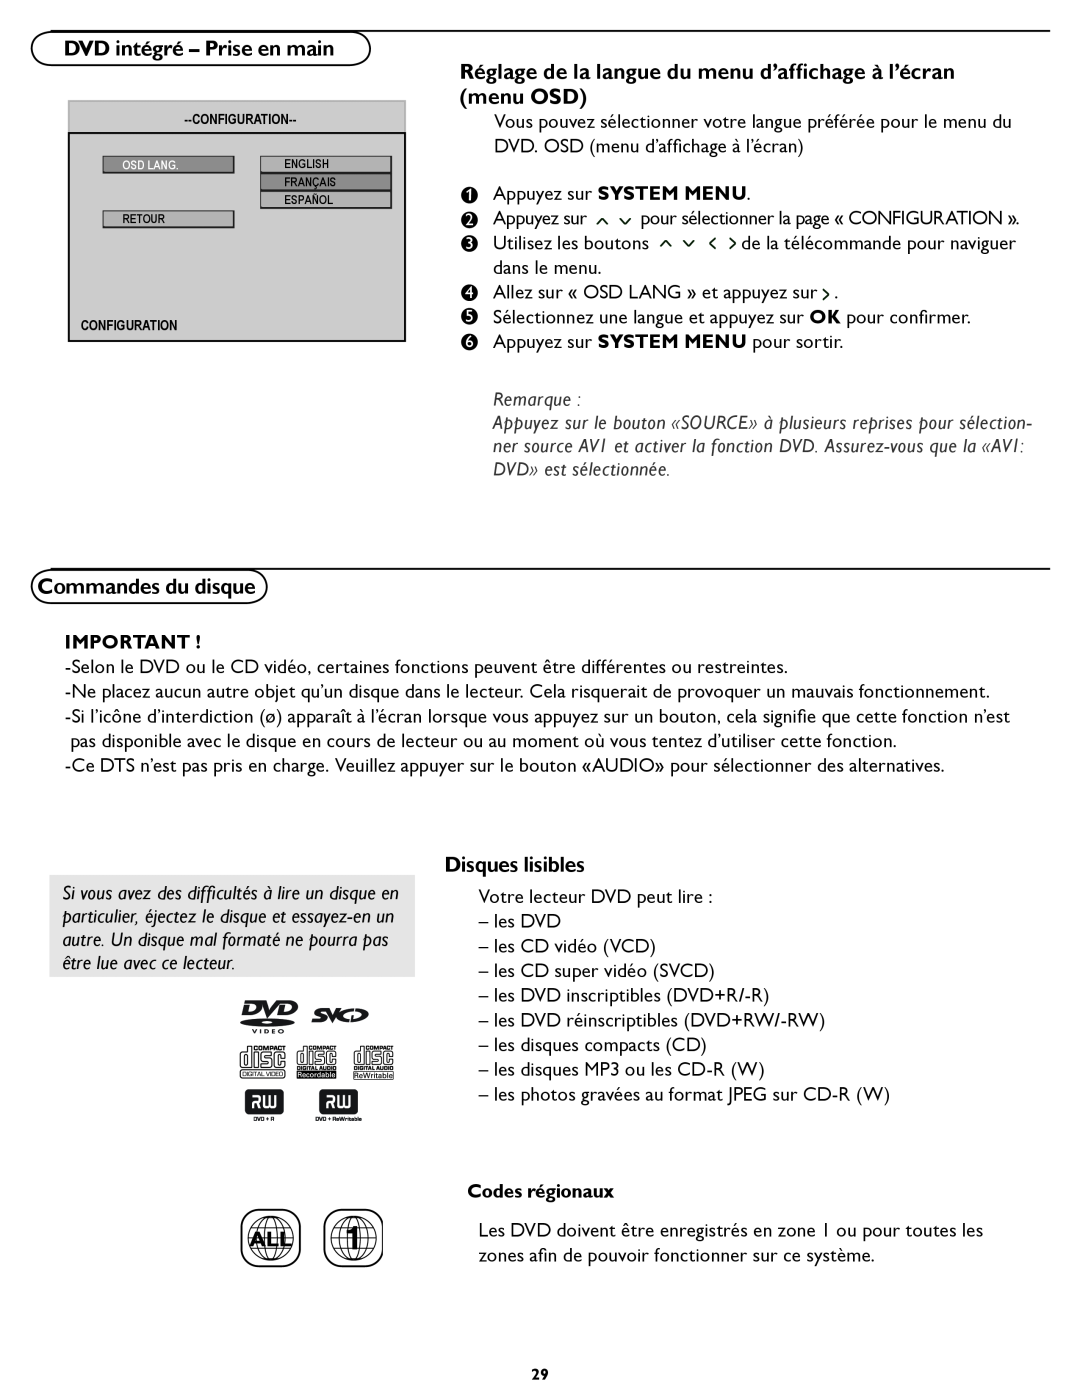 Magnavox 26MD/32MD251D user manual DVD intégré - Prise en main, Réglage de la langue du menu d’afﬁchage à l’écran menu OSD 